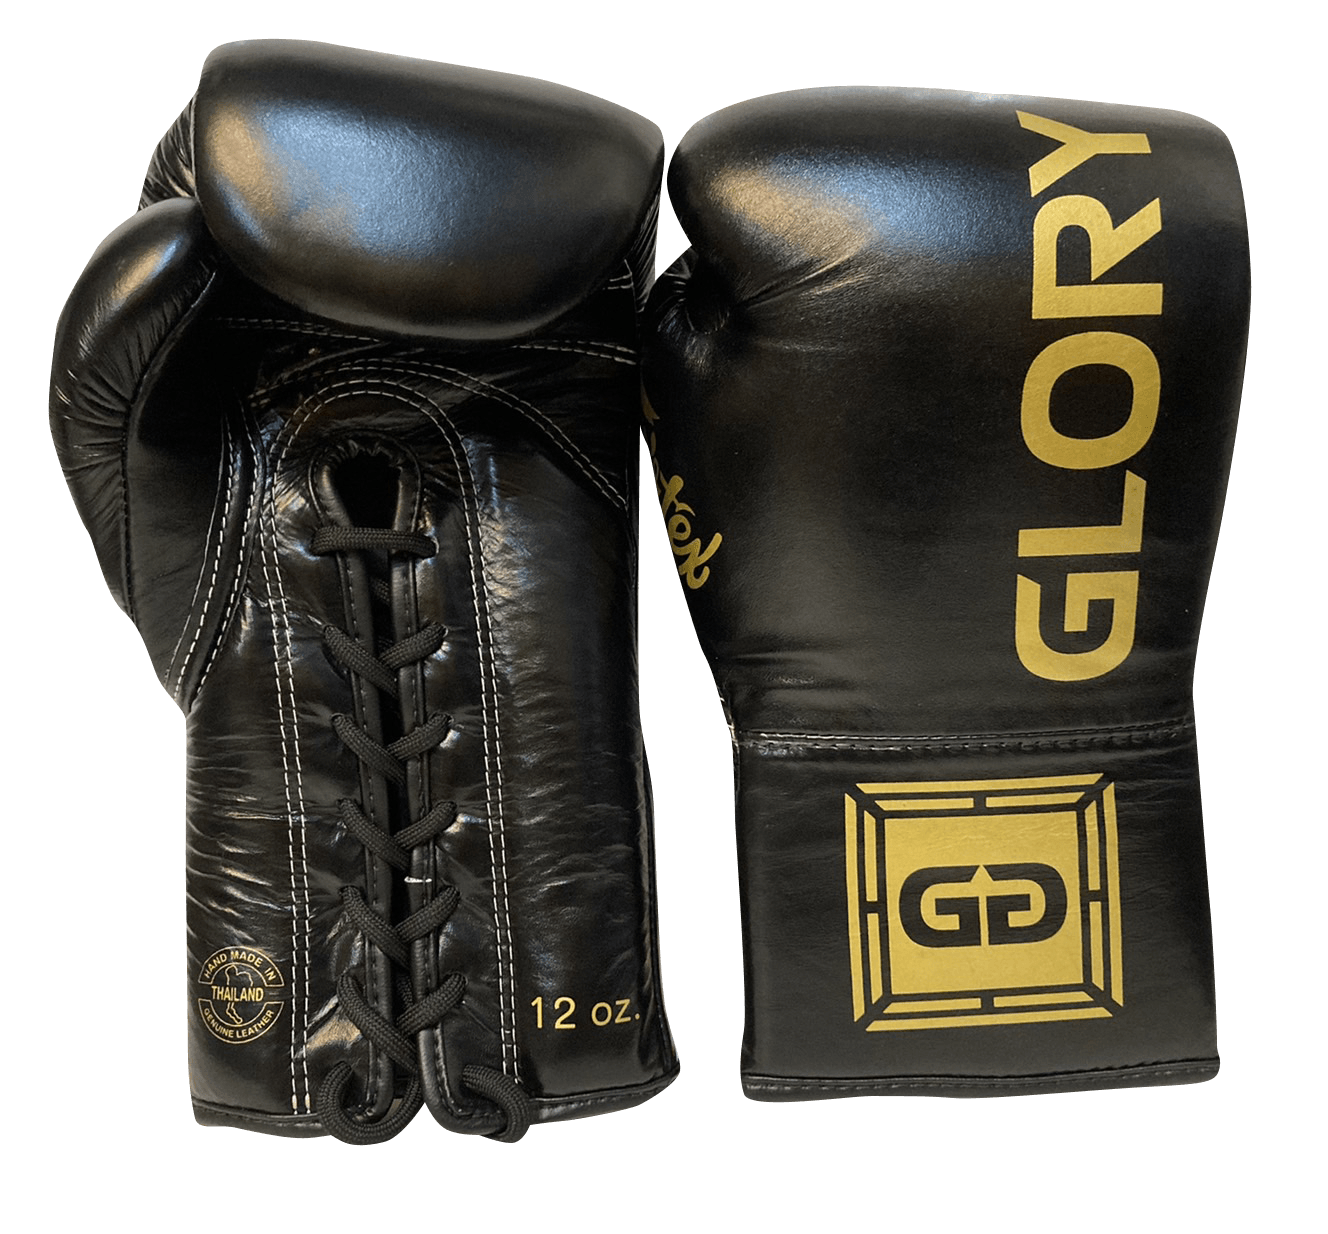 Fairtex Boxing Gloves BGLG1 GLORY Lace Up Black - SUPER EXPORT SHOP